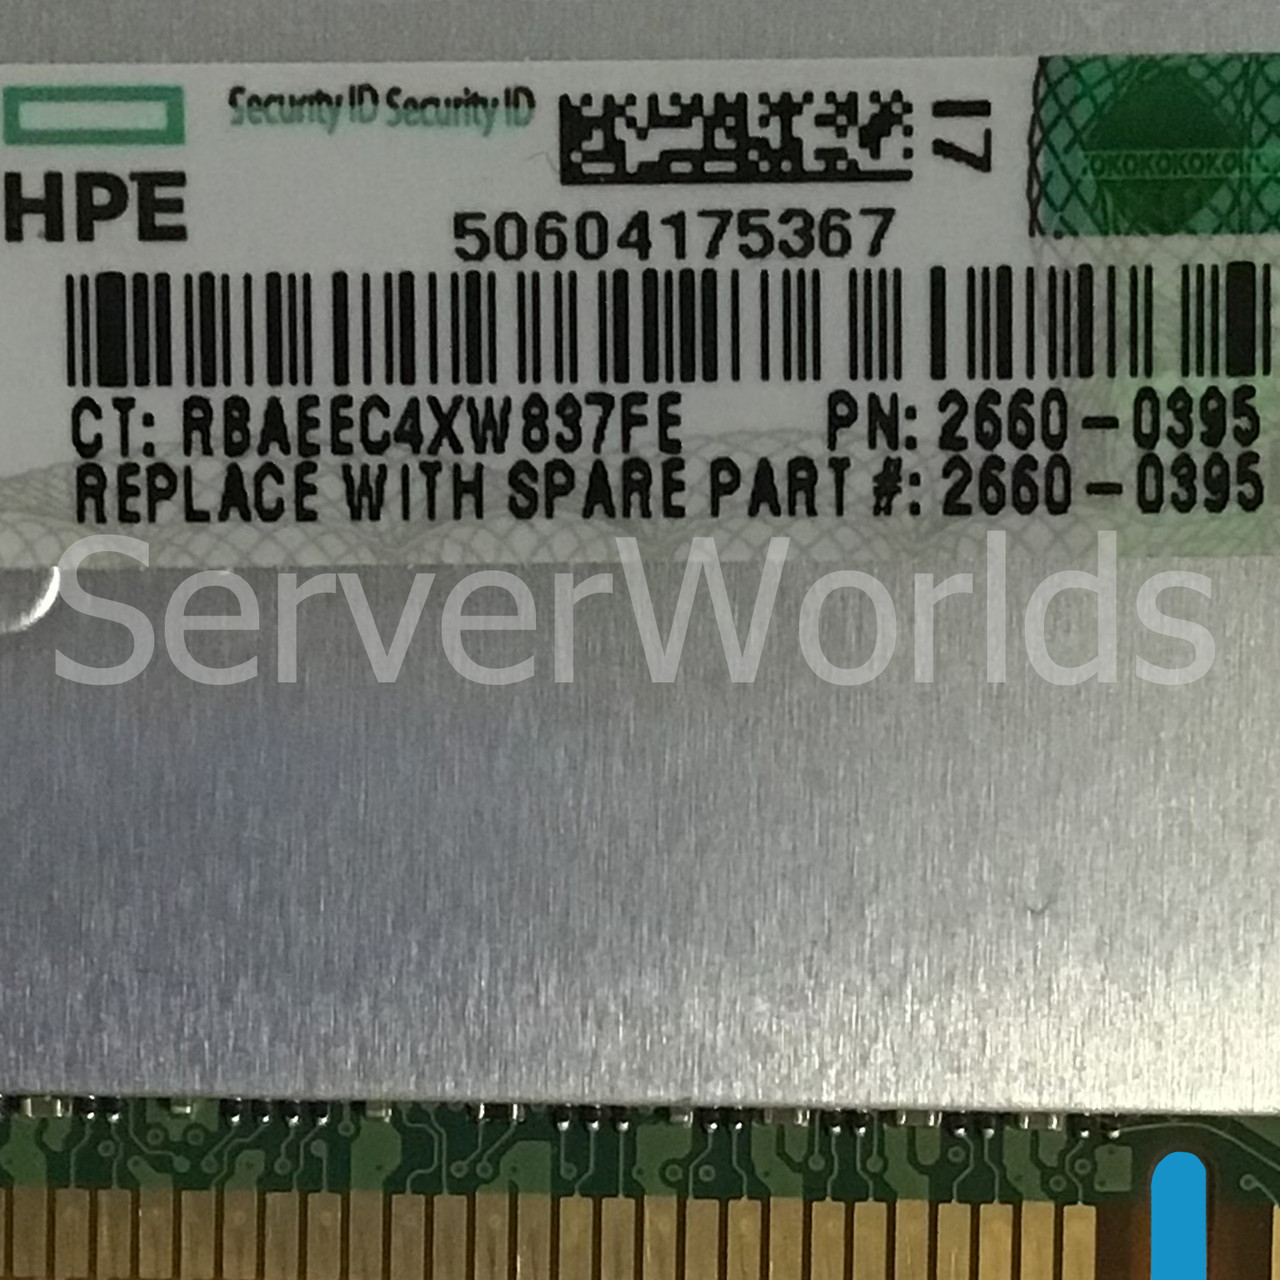 HPe 2660-0395 32GB DDR3-10660 PC3-8500 REG ECC DIMM 